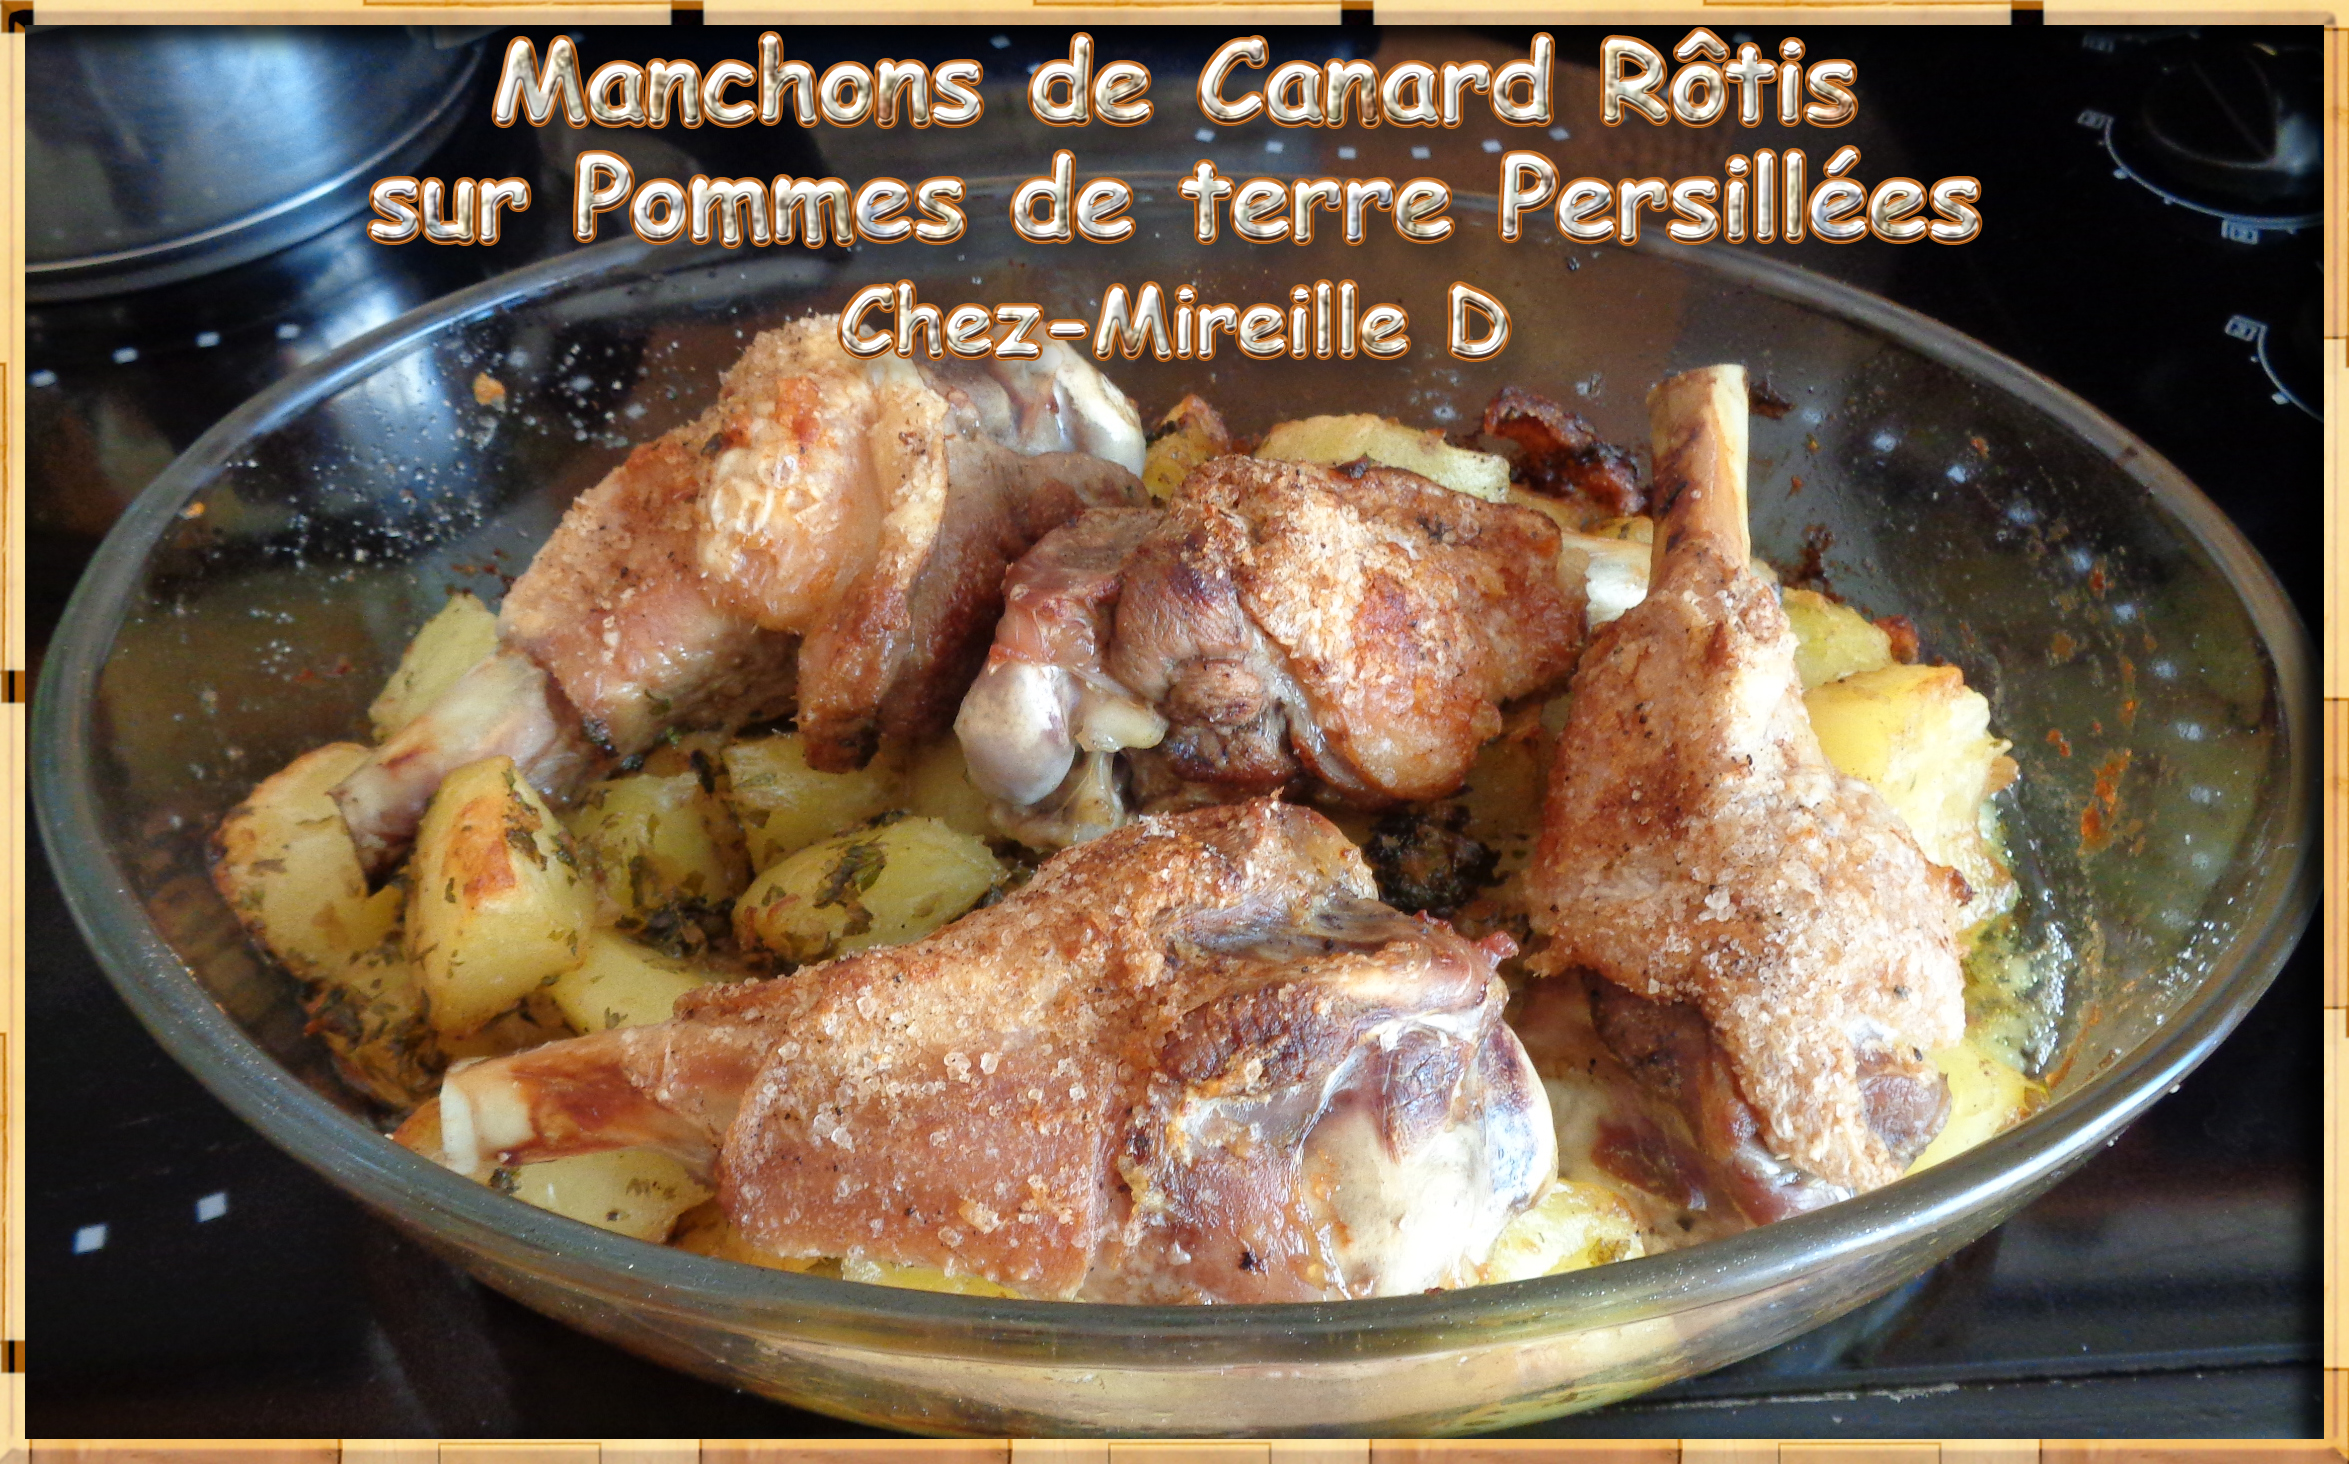 Manchons de Canard Rôtis et Pommes de terre Persillées - Chez-Mireille D